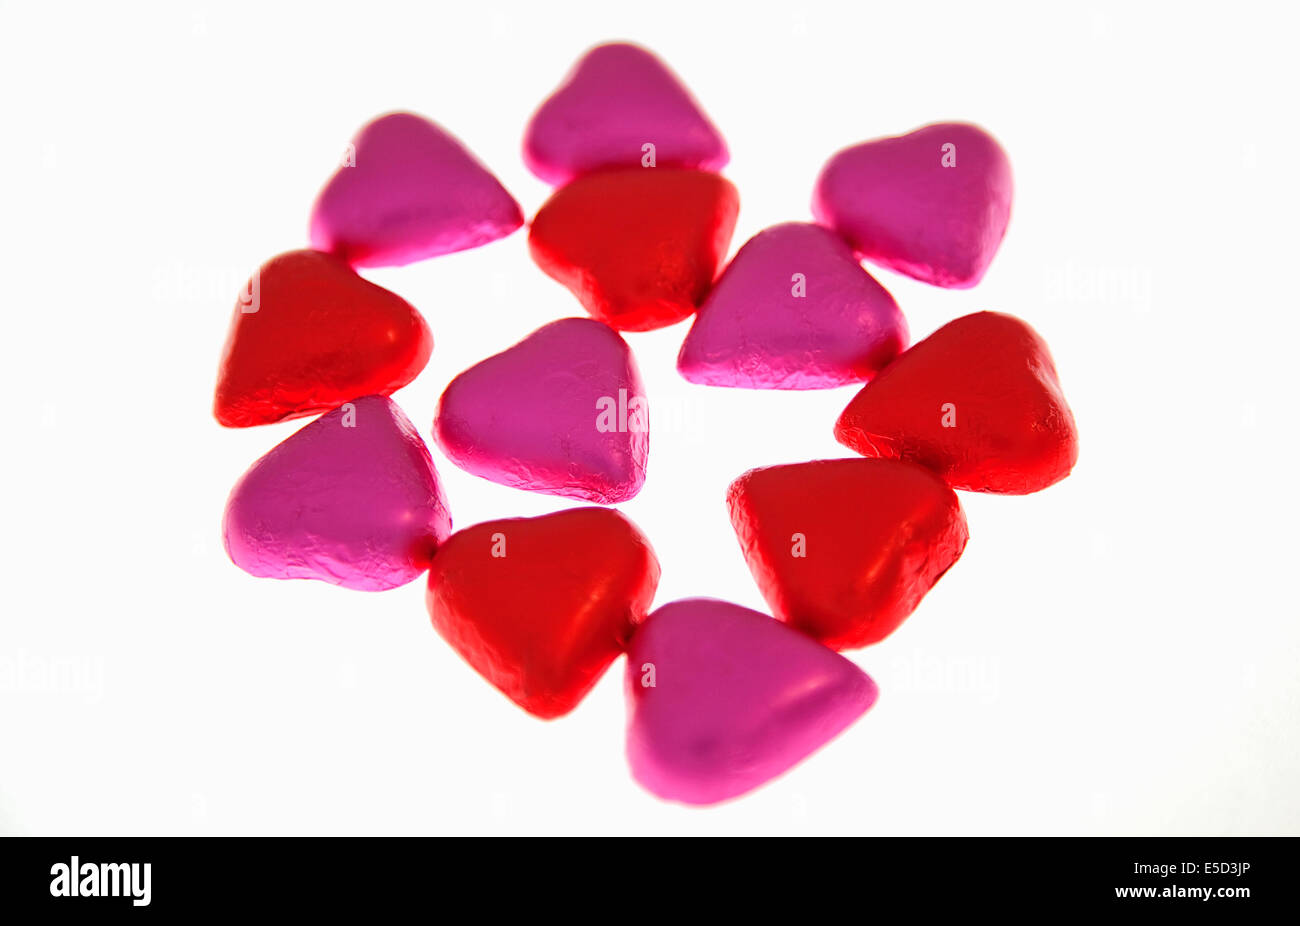 Lebensmittel, Süßwaren, Schokolade Herzen in rosa und rote farbige Folie abgedeckt. Stockfoto